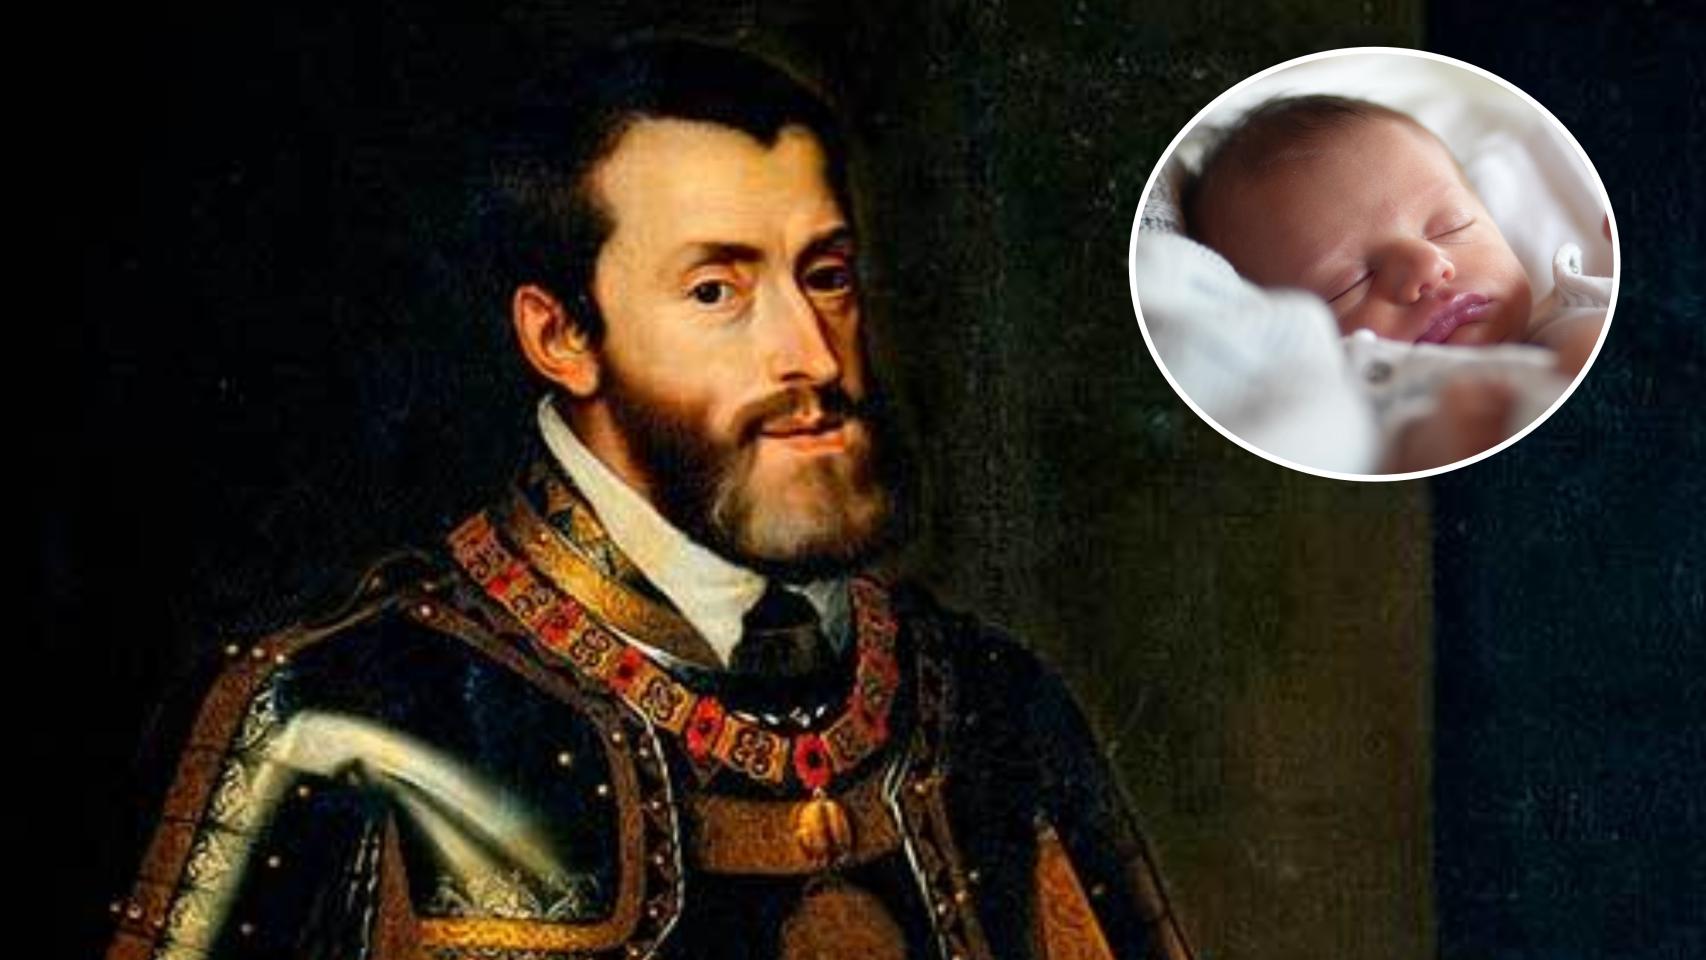 Un collage de Carlos I junto a una imagen de un recién nacido